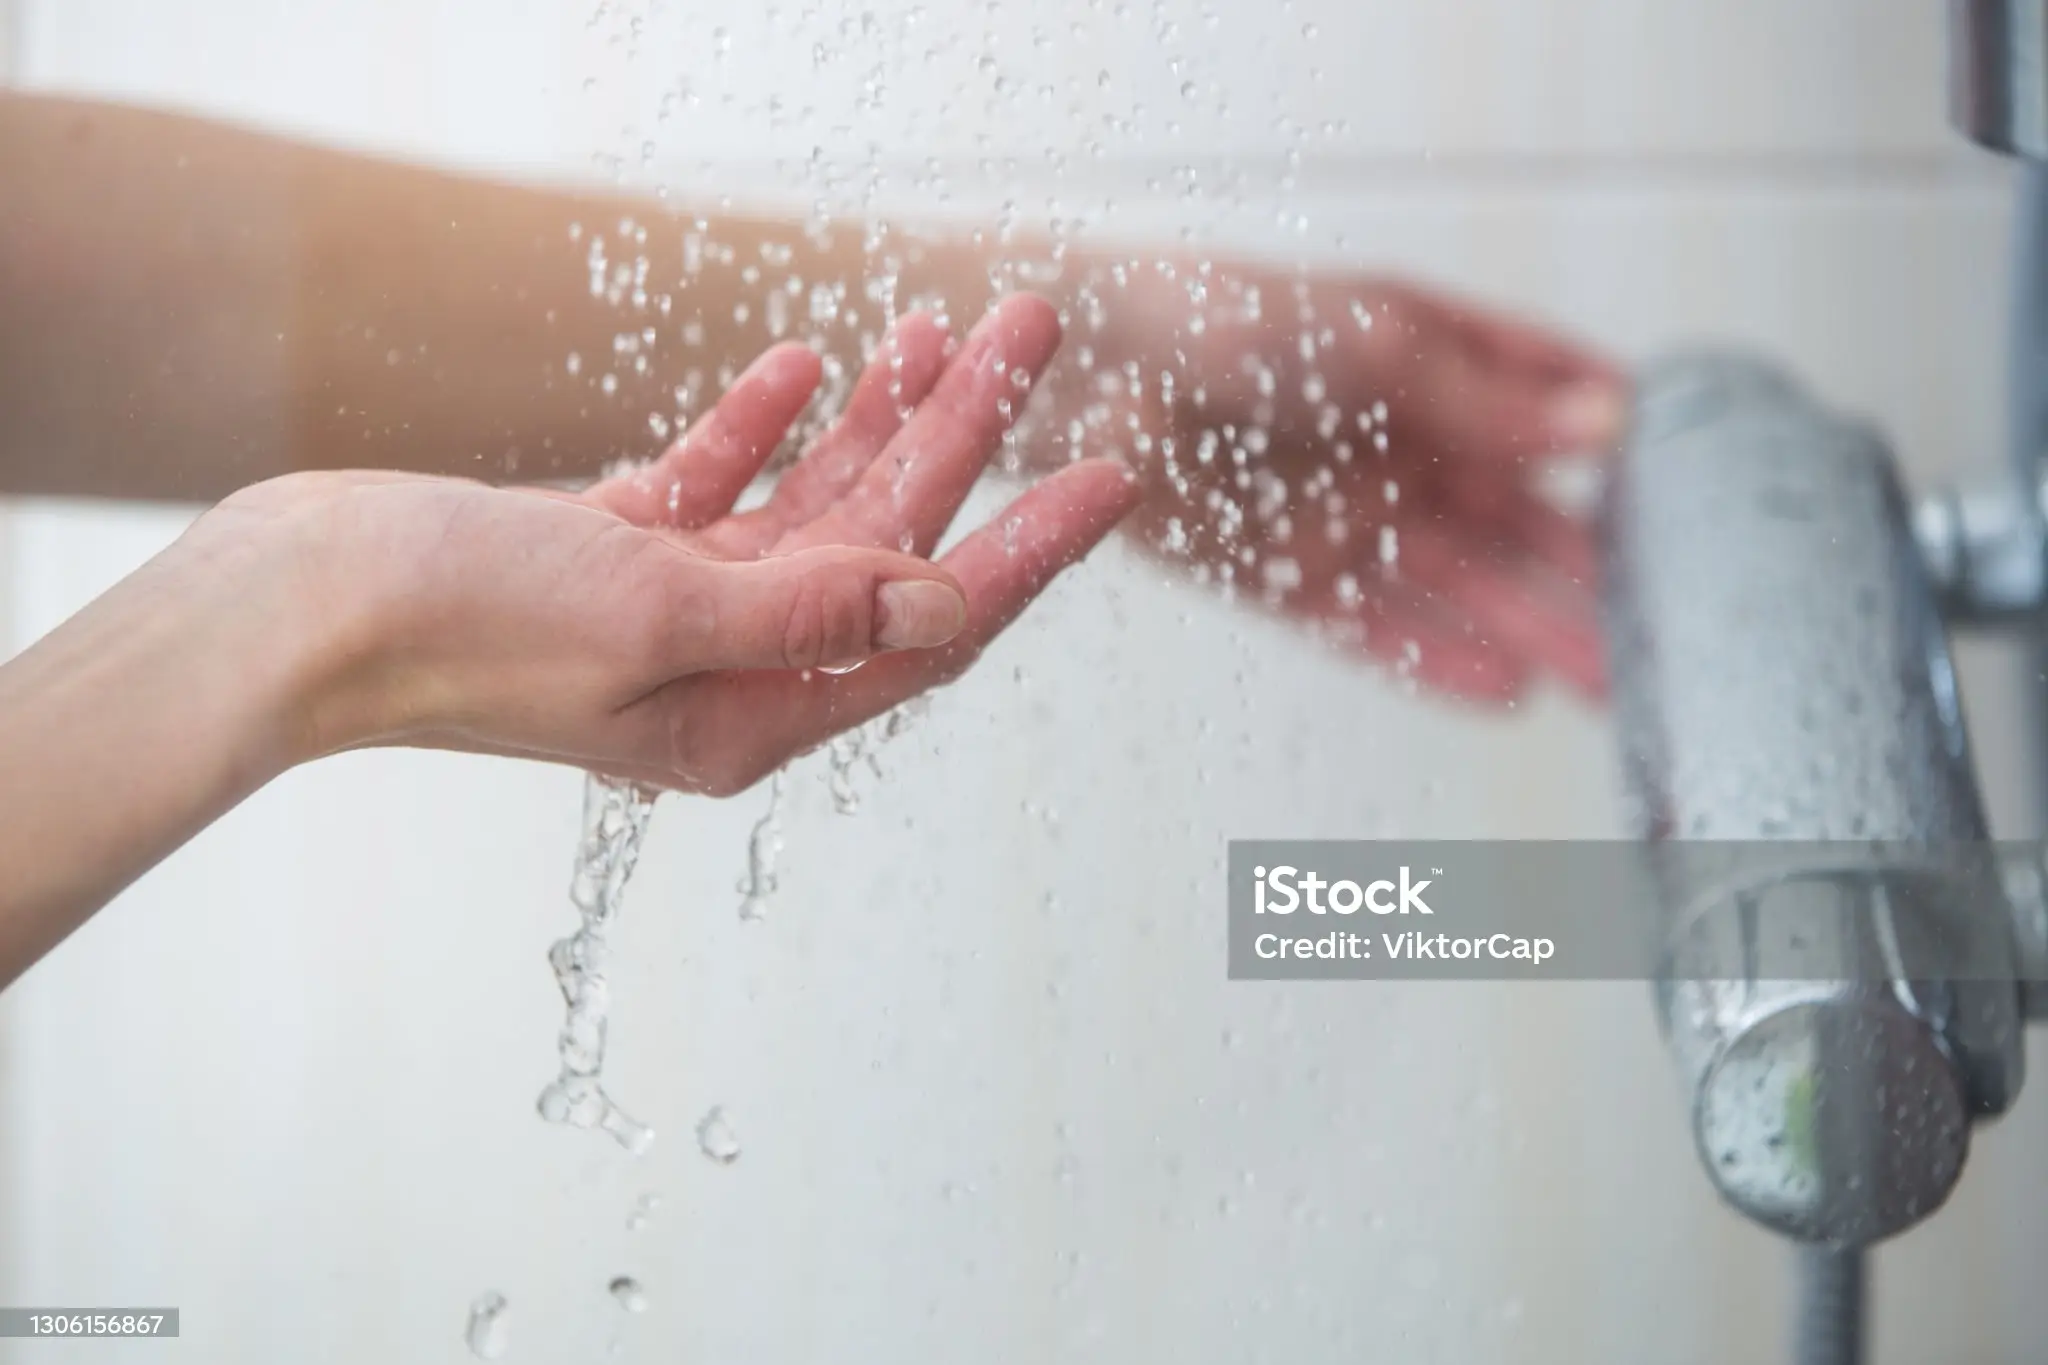 샤워기를 왼손으로 틀고 오른손으로 떨어지는 물을 받는 사람의 손